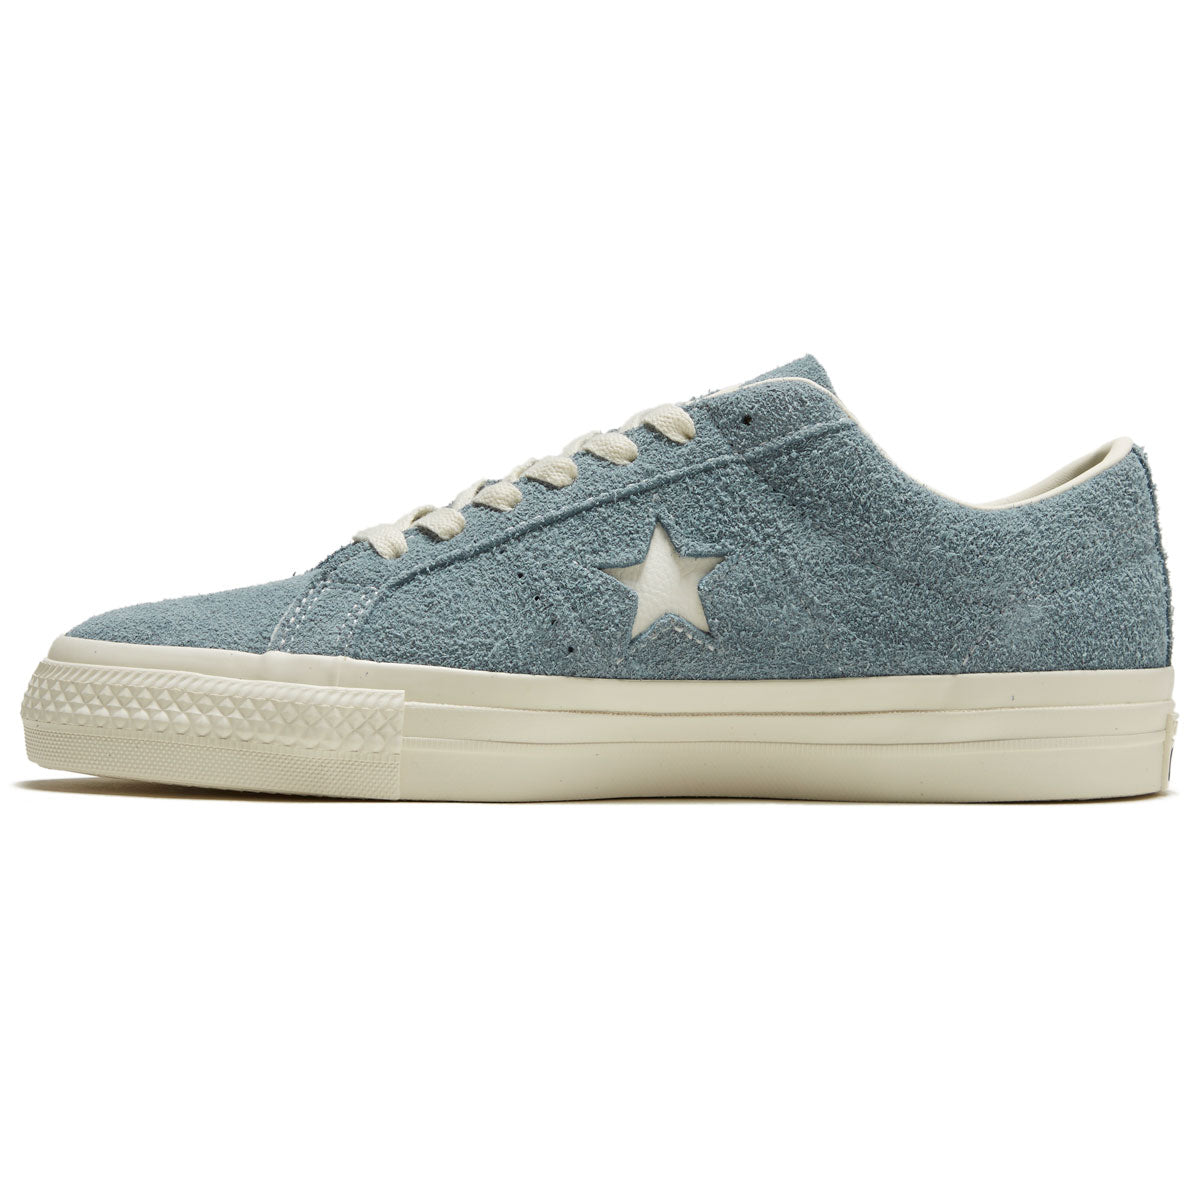 Converse One Star Pro Shoes - Cocoon Blue/Egret/Egret – CCS